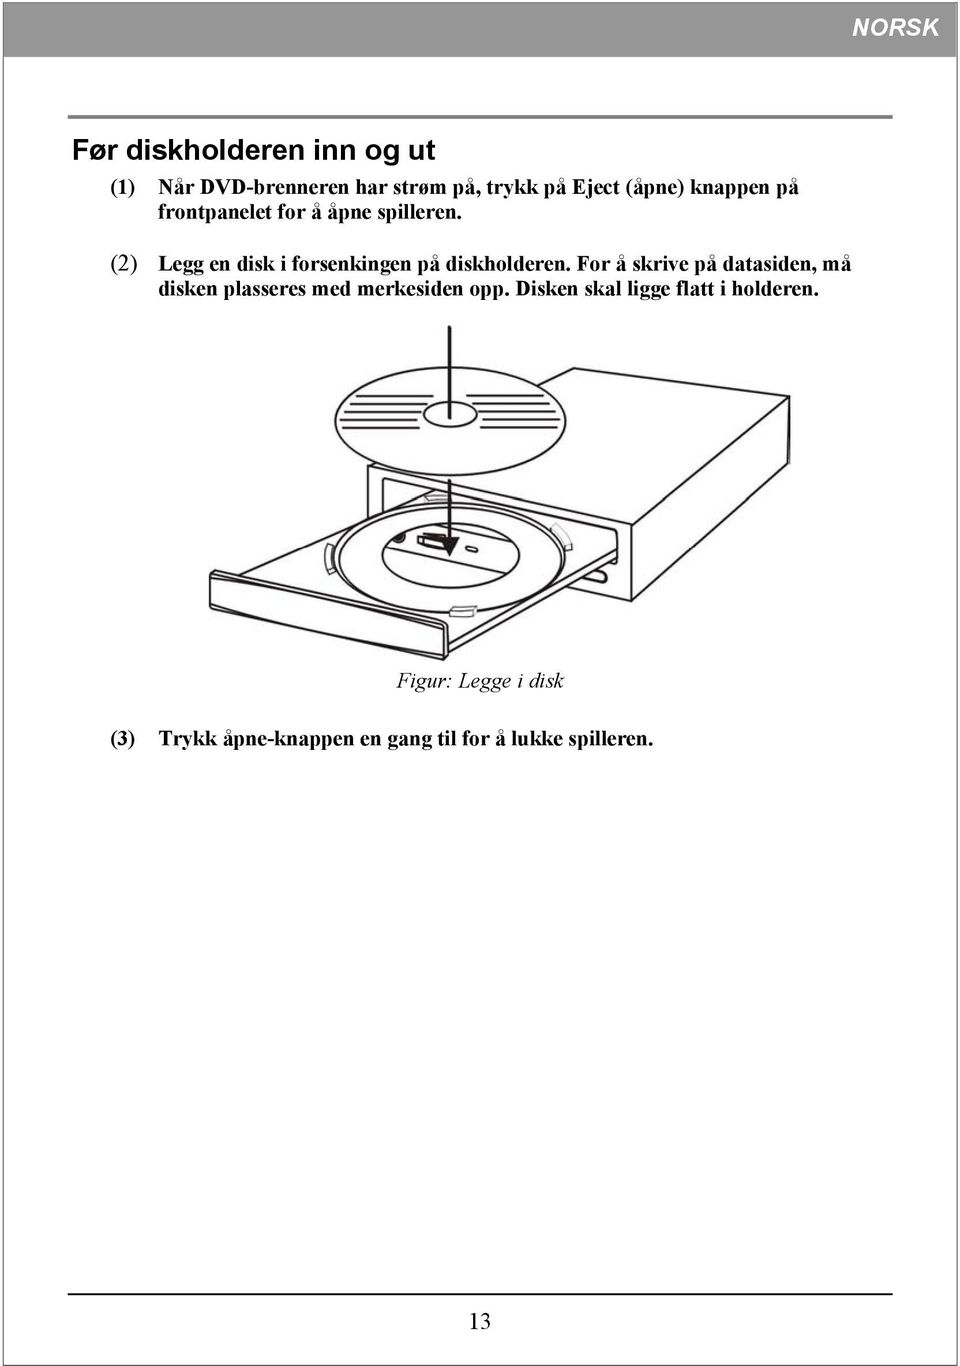 (2) Legg en disk i forsenkingen på diskholderen.